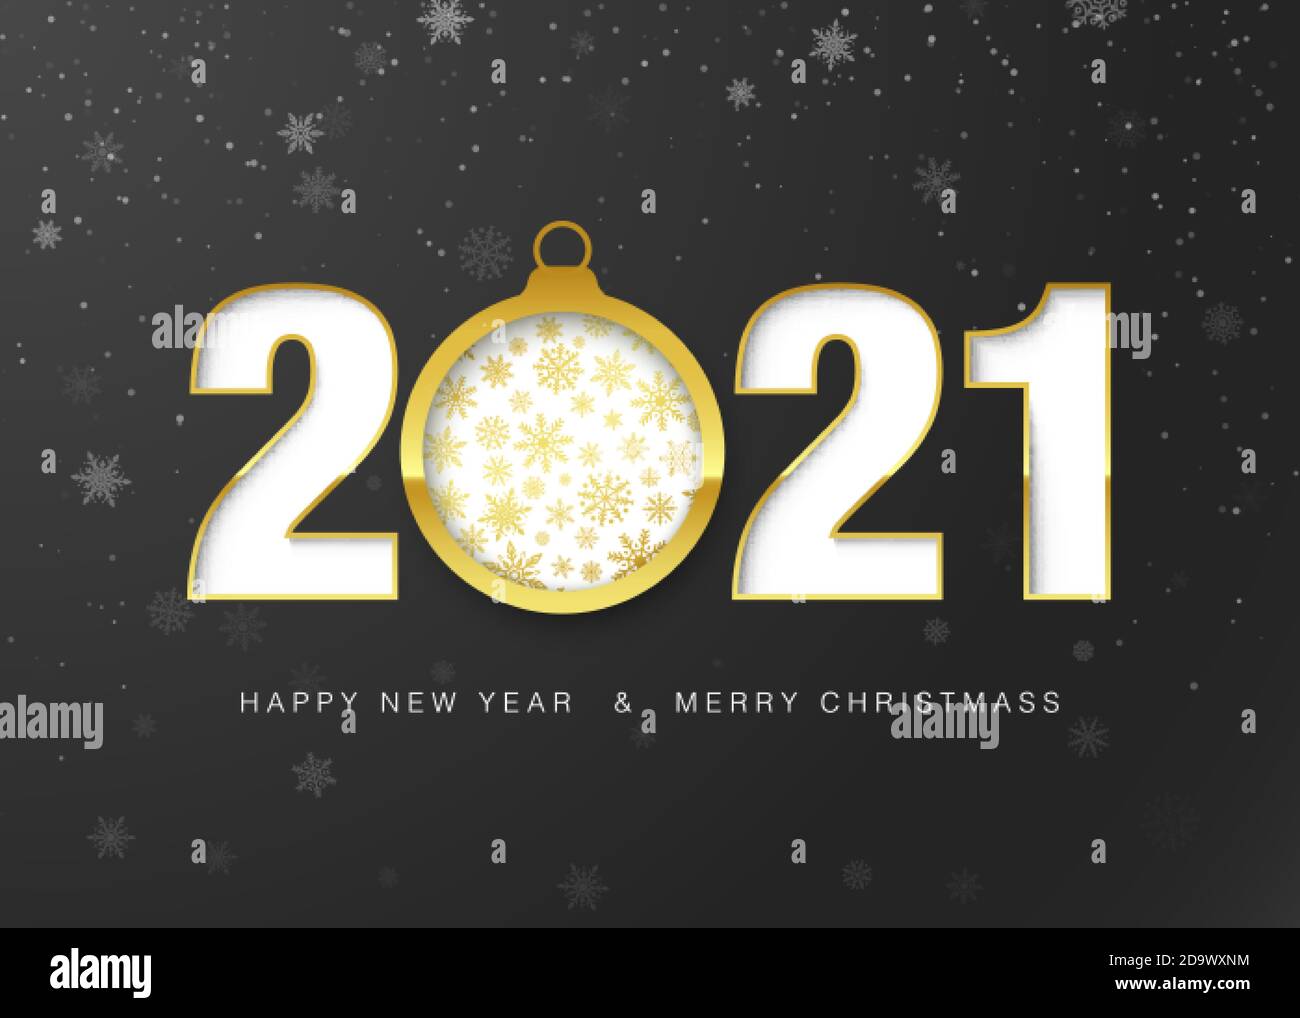 2021 Glückliche Neujahrskarte. Gold Papier geschnitten Weihnachtskugel und Grußtext. Dekorationselement für Urlaubsbanner und Einladung. Vecto Stock Vektor